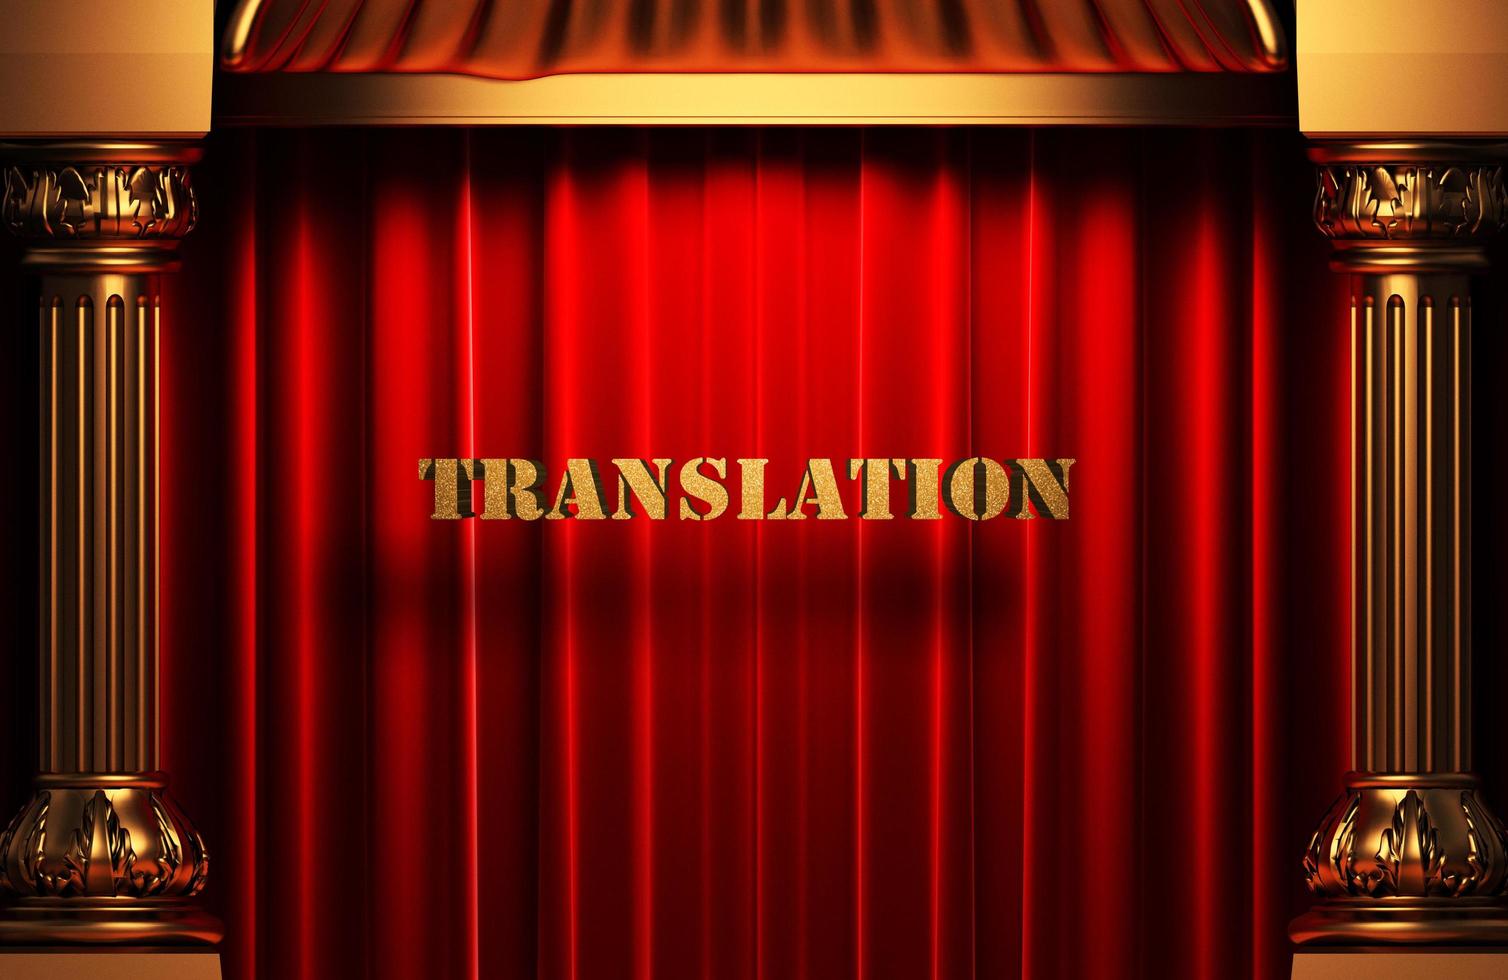 traducción palabra dorada en cortina roja foto